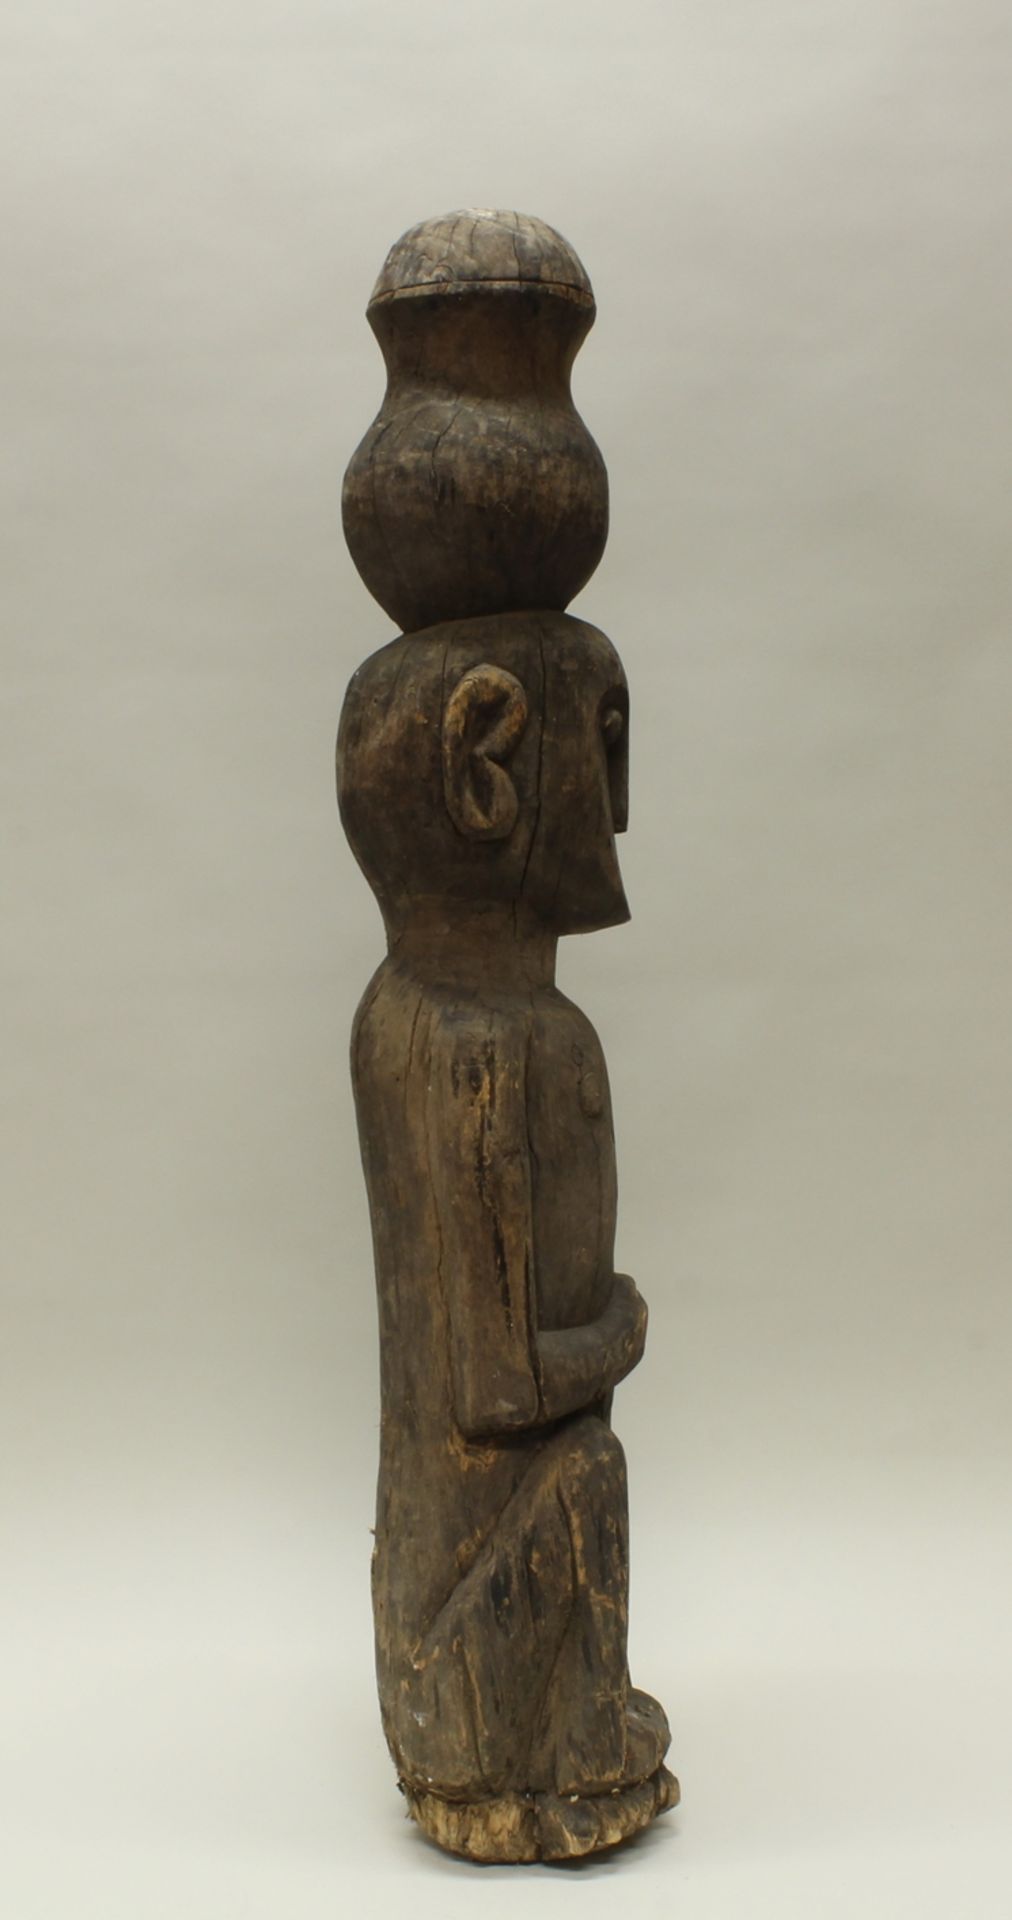 Hockende Figur (als Pfahl), wohl Borneo/Sumatra, Ozeanien, authentisch, Holz, ca. 99 cm hoch, Verwi - Image 4 of 4